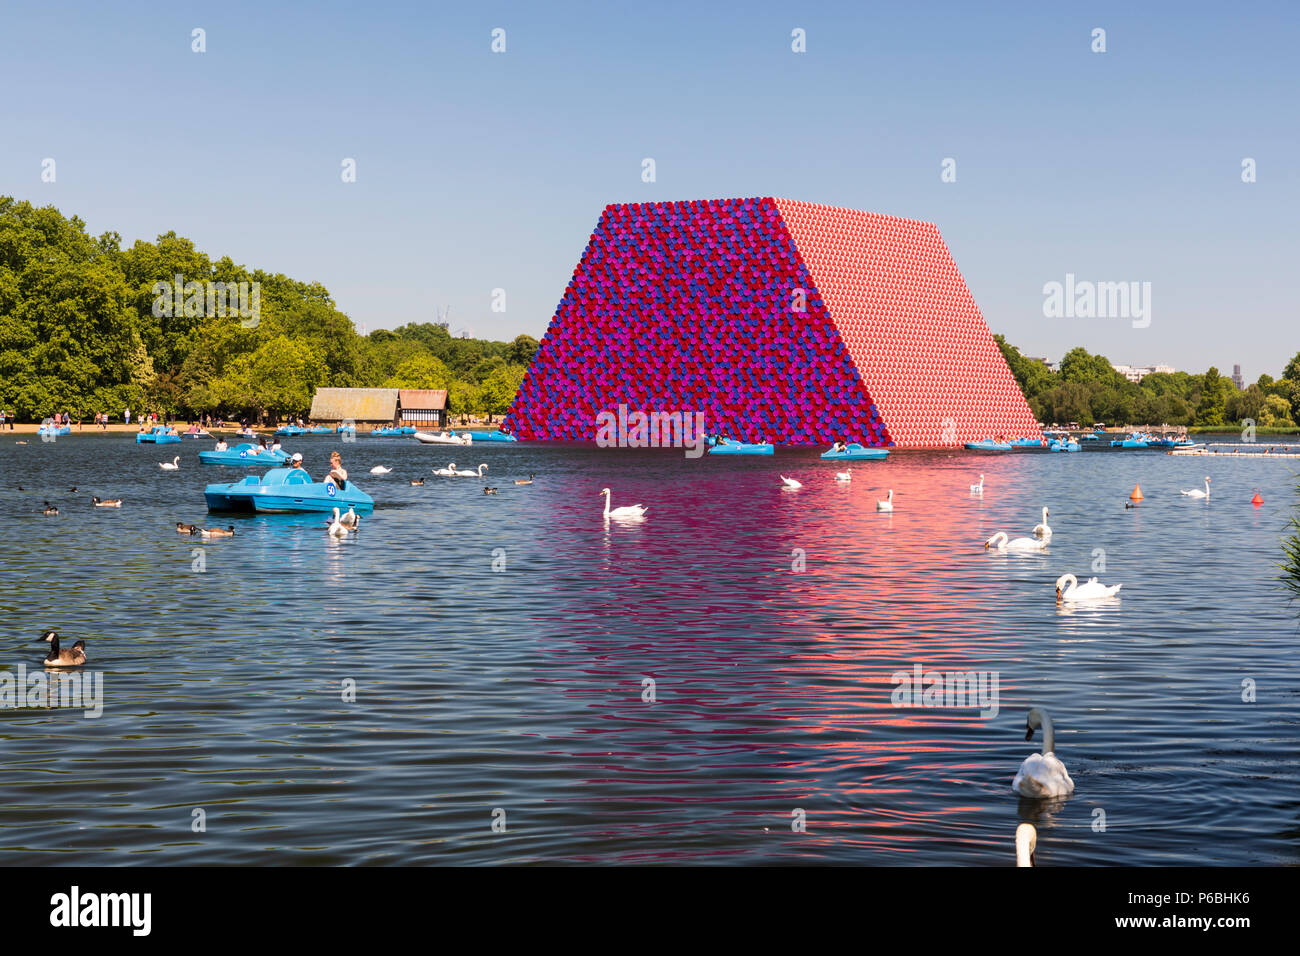 Le mastaba de Londres est une installation d'art flottante par l'artiste Christo situé sur le lac Serpentine, à Hyde Park. Banque D'Images